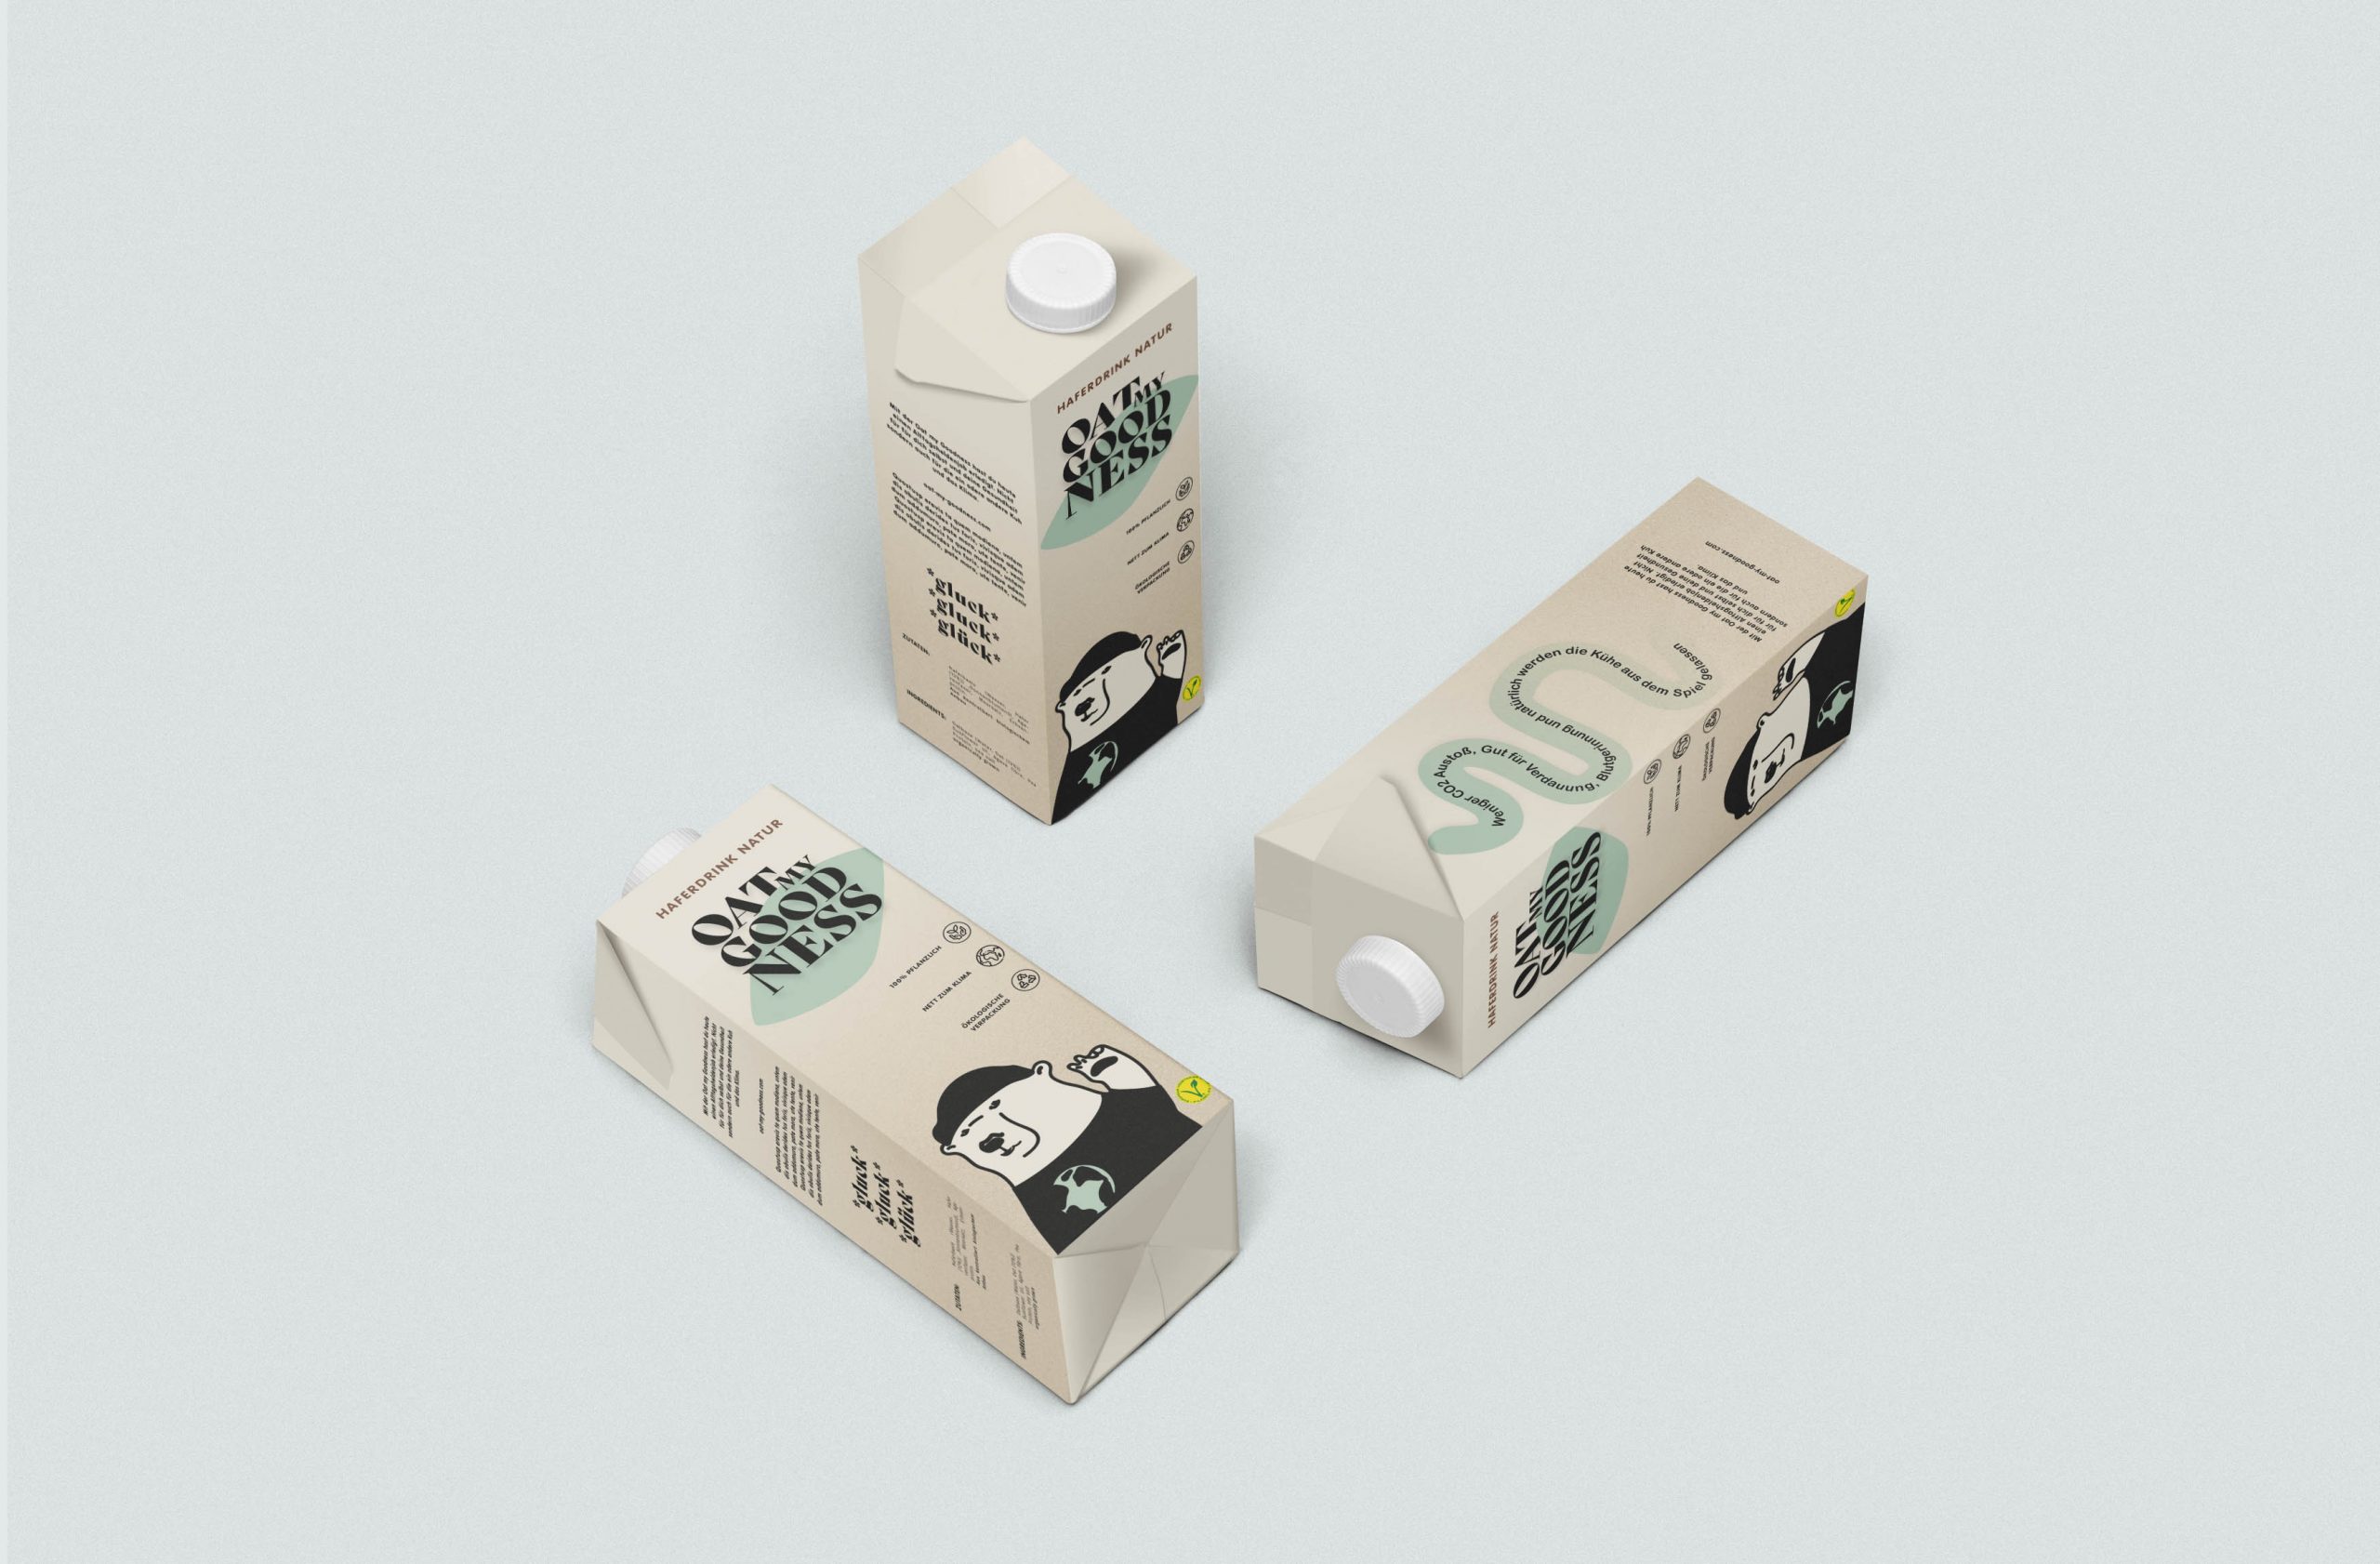 OMG-haferdrink-packaging-2